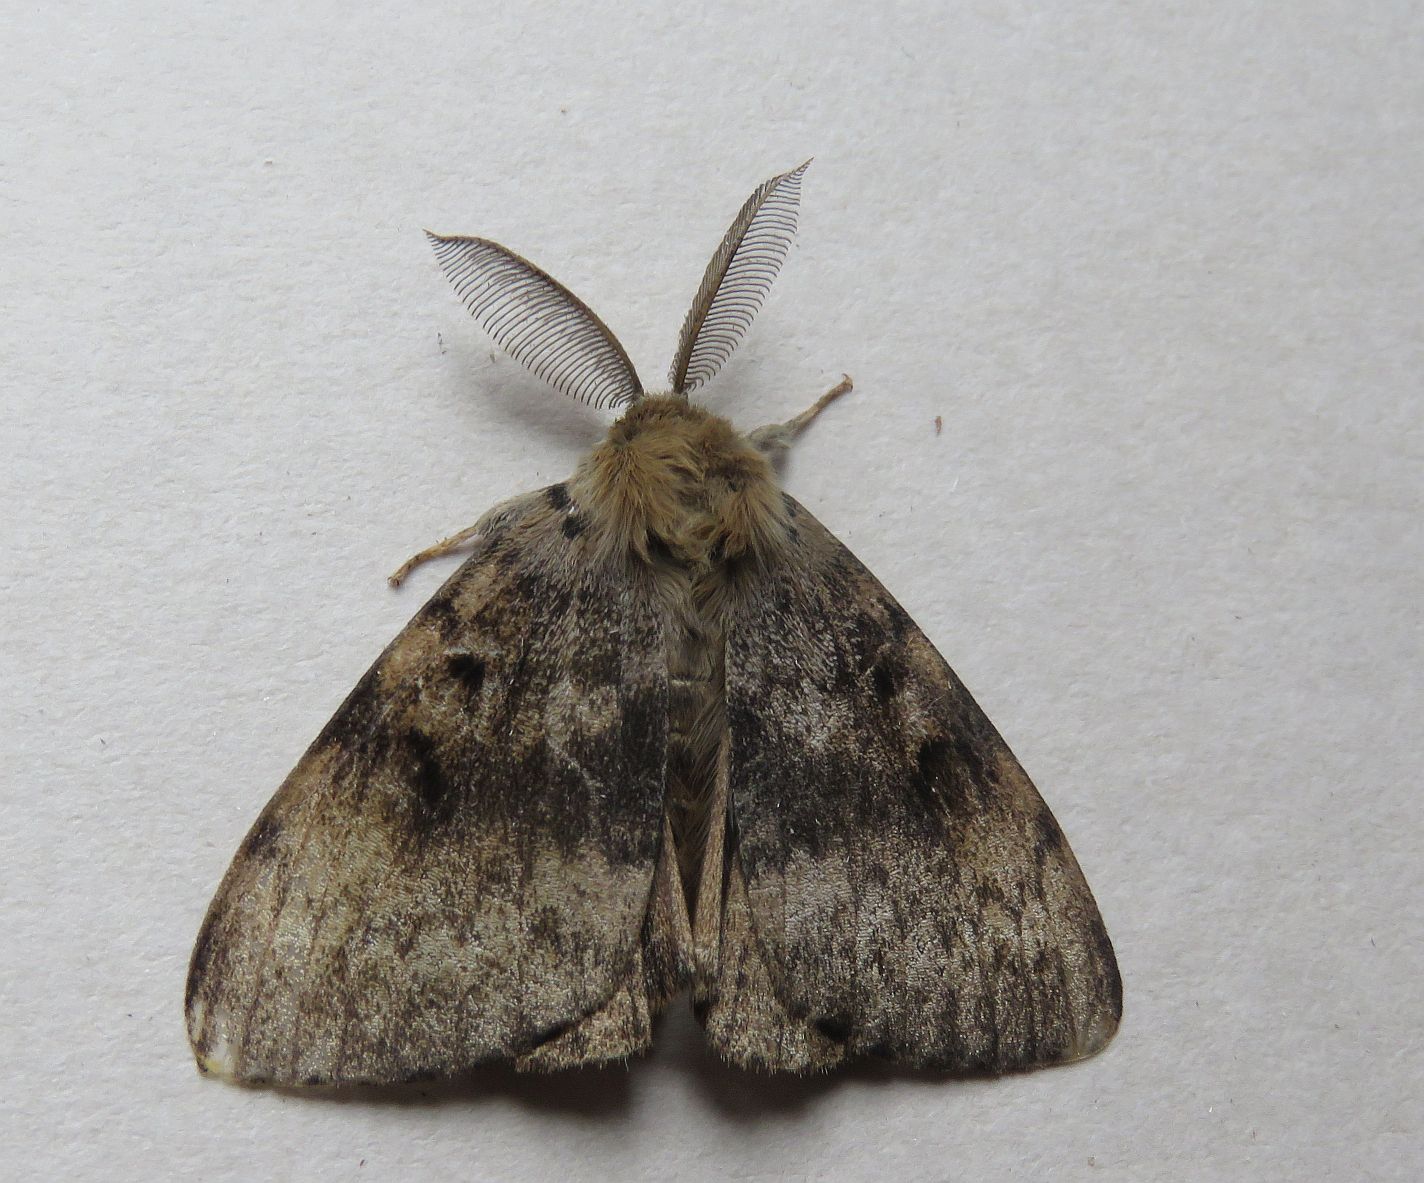  Male Gypsy Moth 